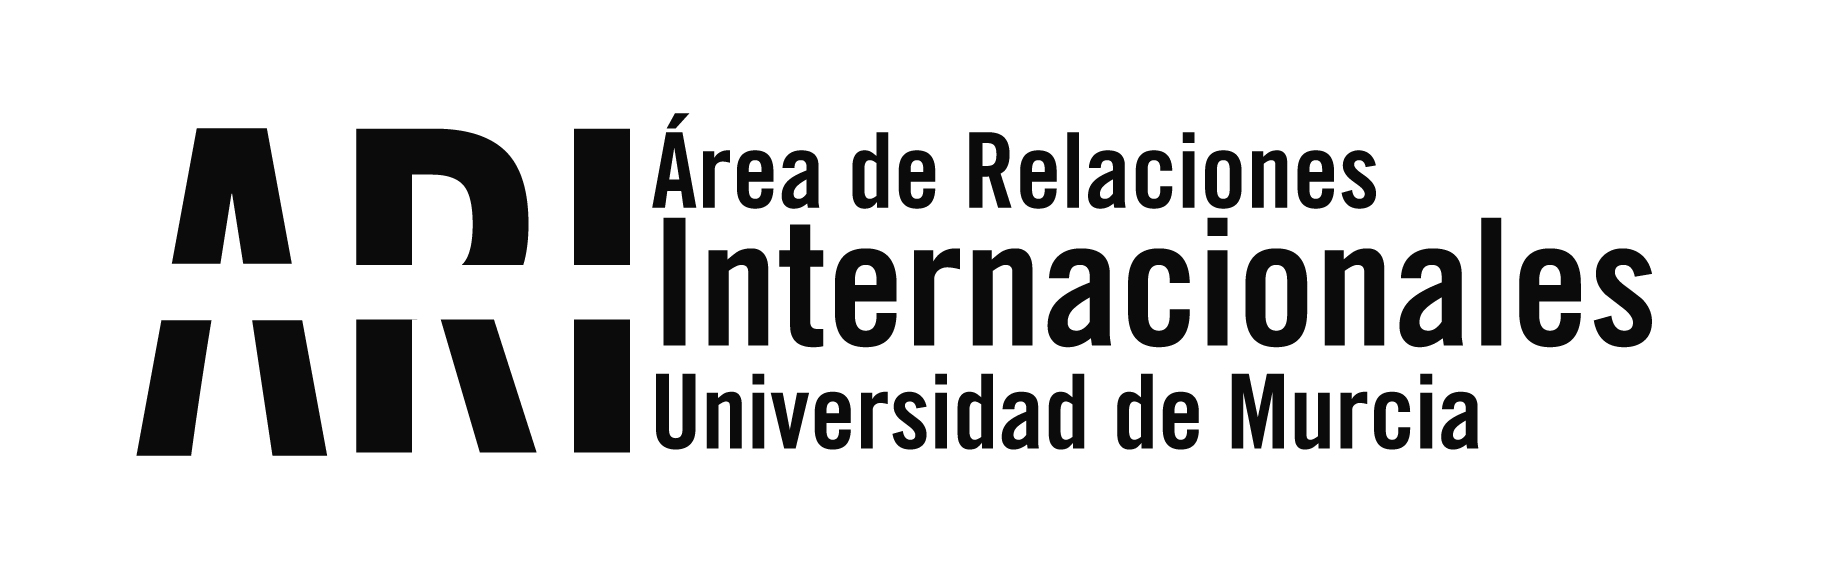 El proyecto Erasmus+ AROSE llega a su fin con una conferencia final en la Biblioteca Regional de Murcia - Área de Relaciones Internacionales